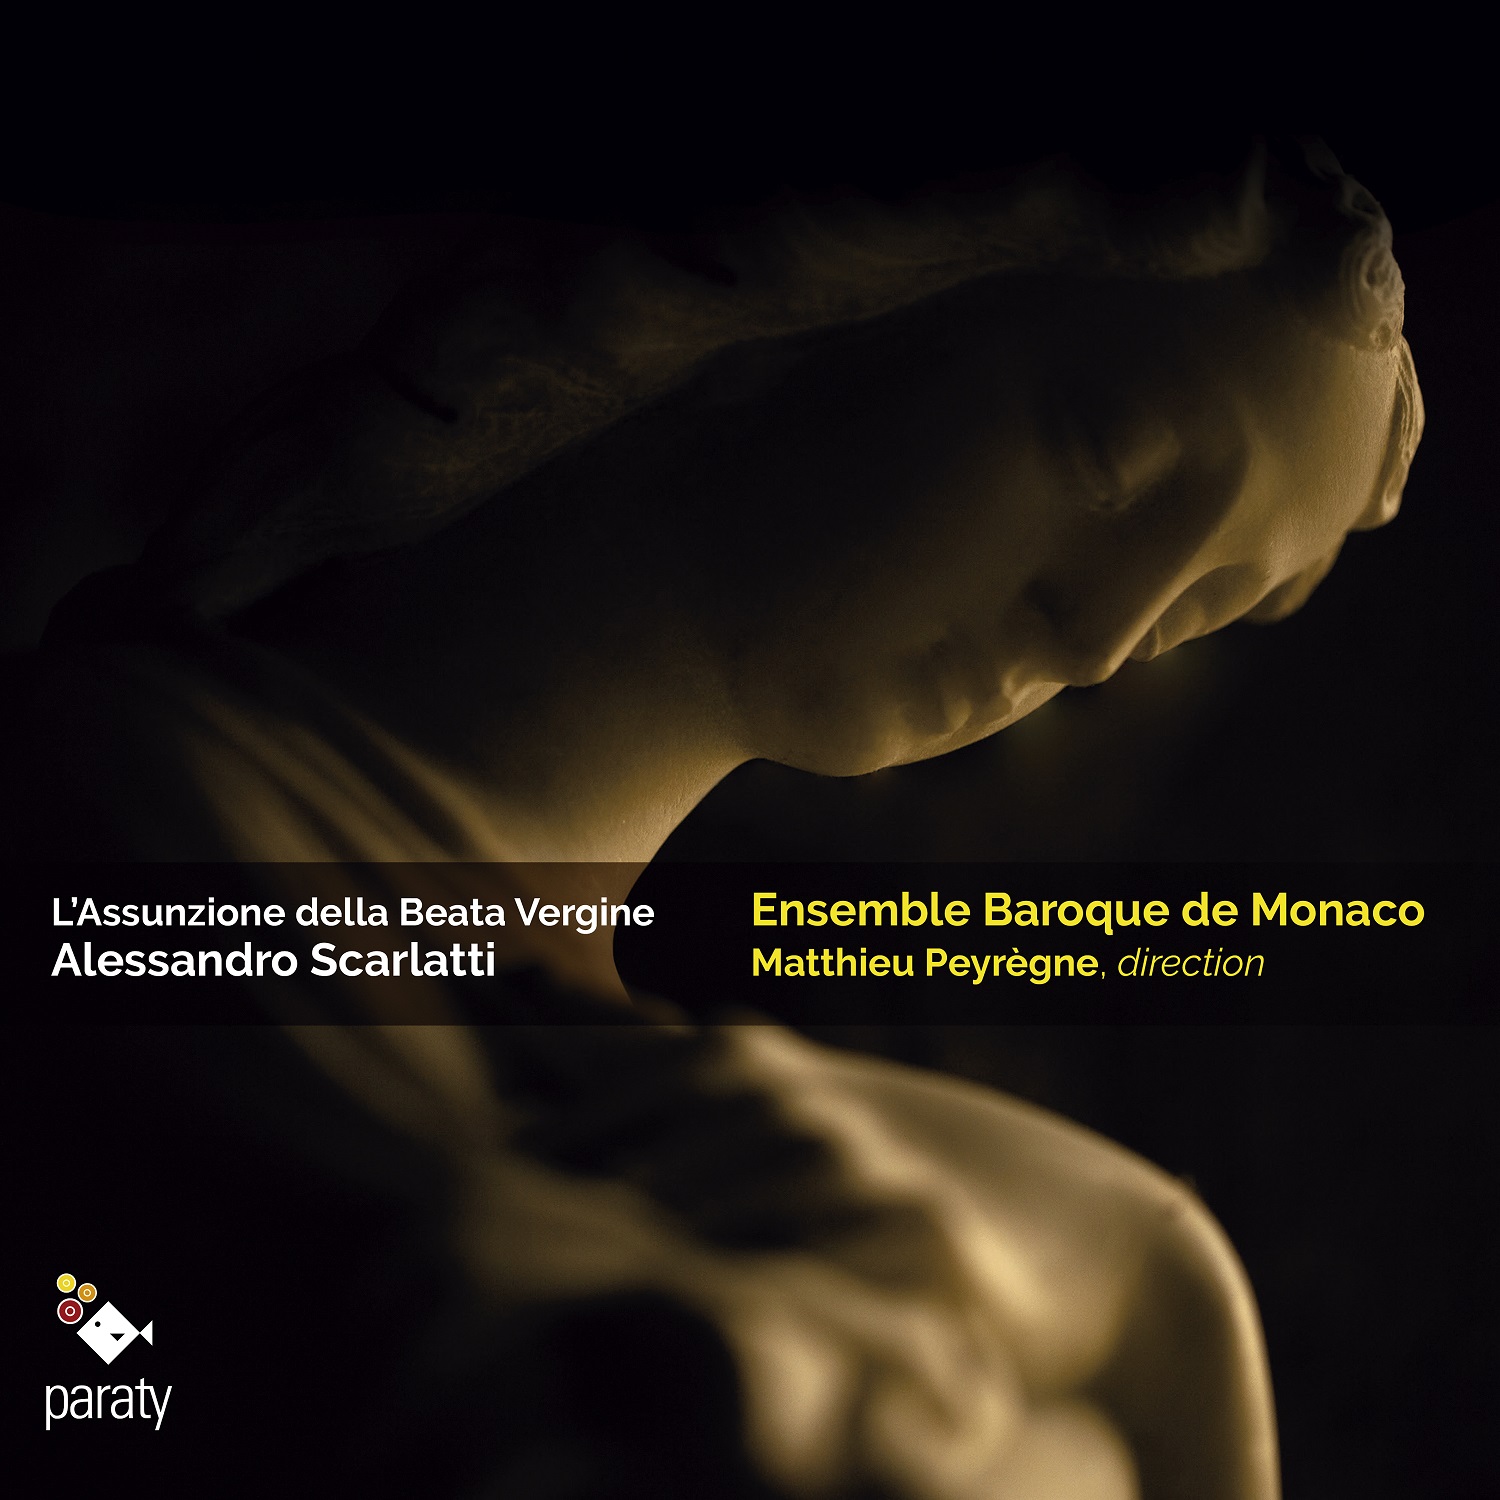 L’assunzione della Beata Virgine, Alessandro Scarlatti